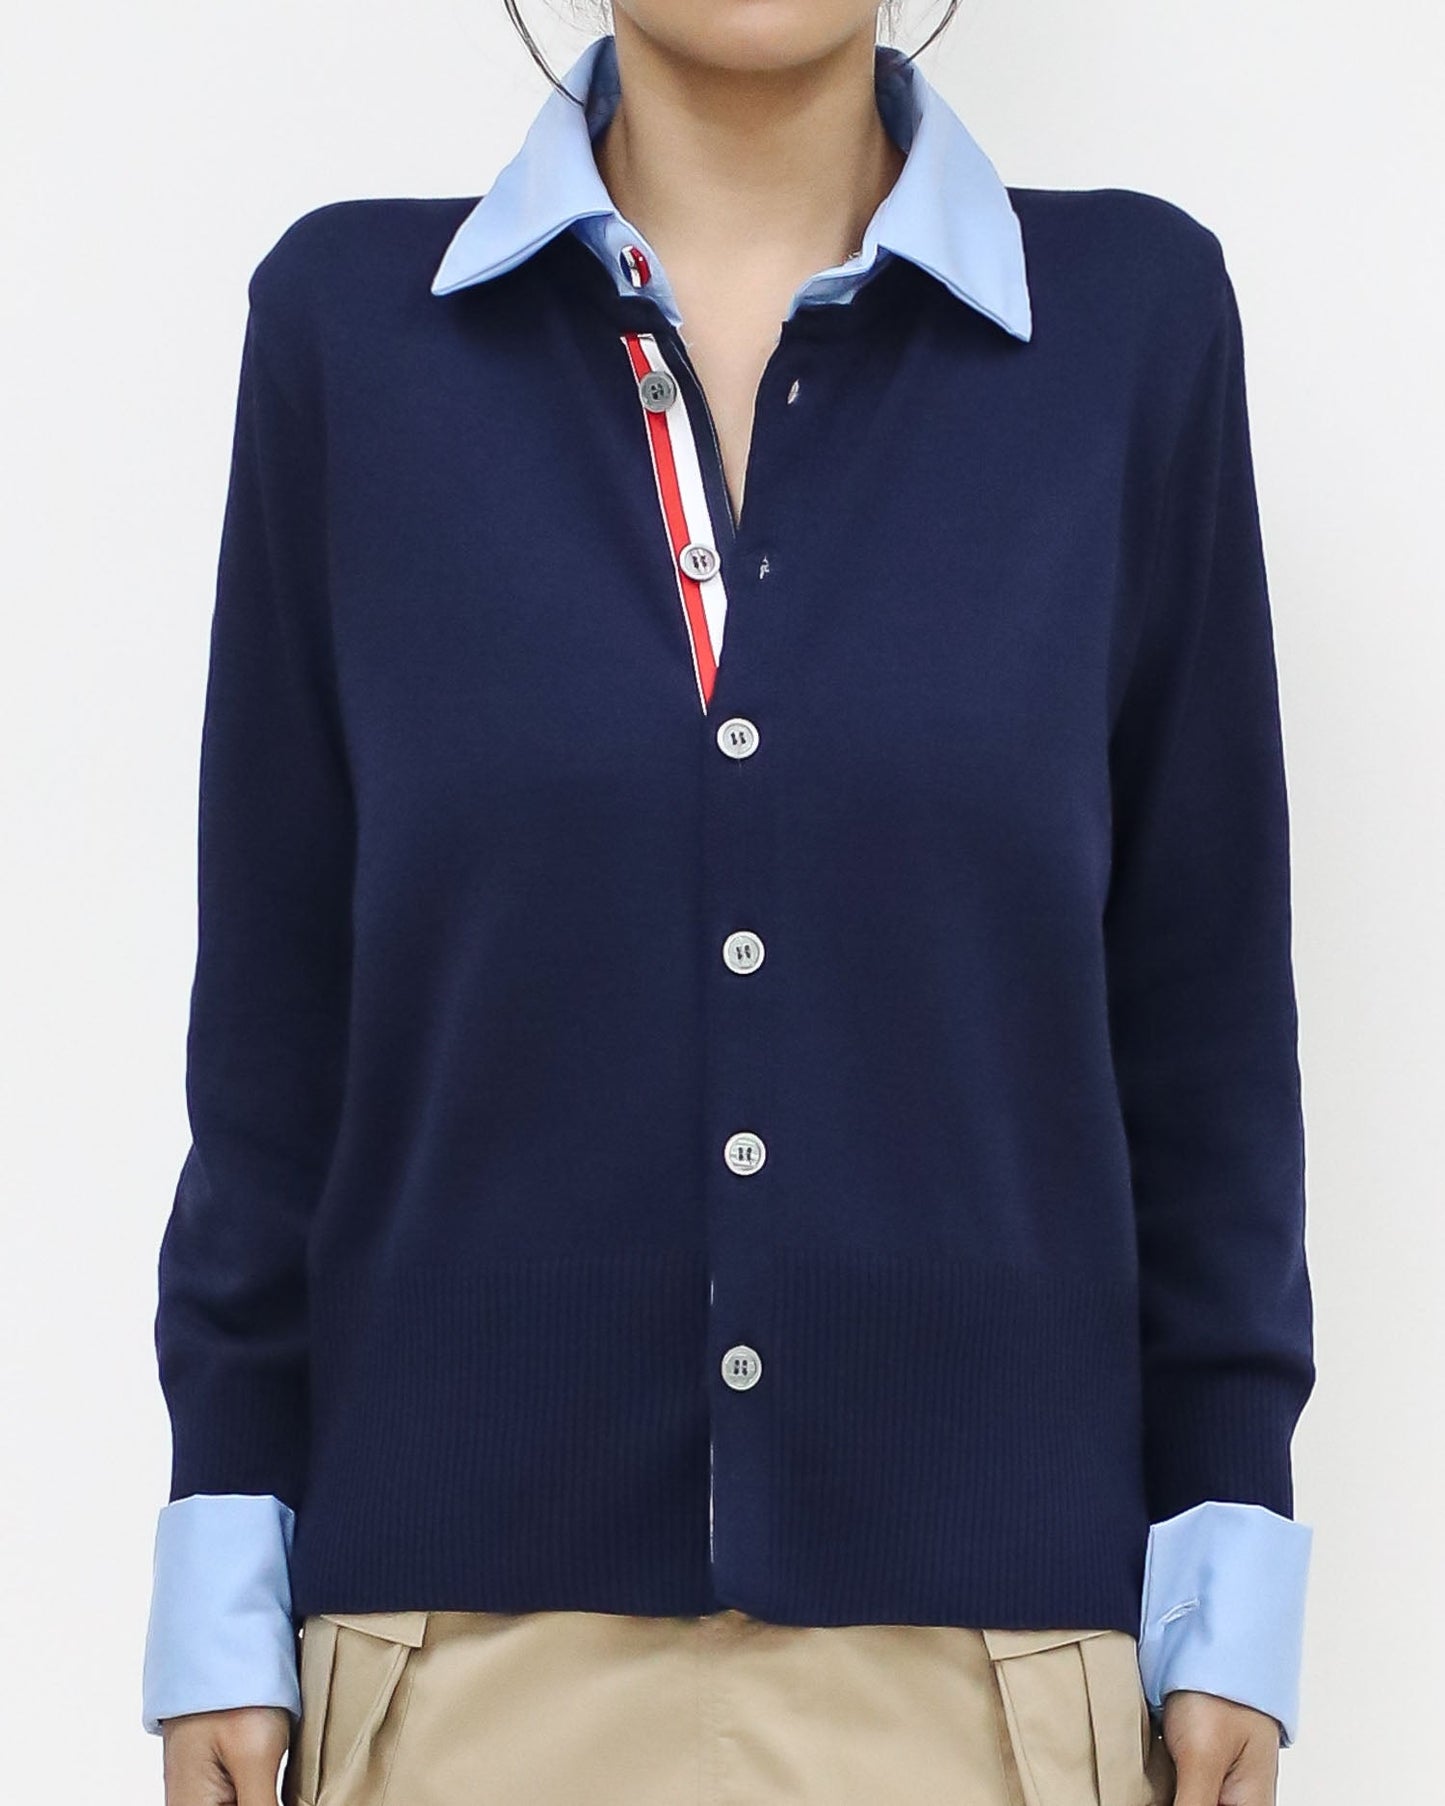 海軍藍配藍色襯衫領口和袖口針織上衣 *預購*